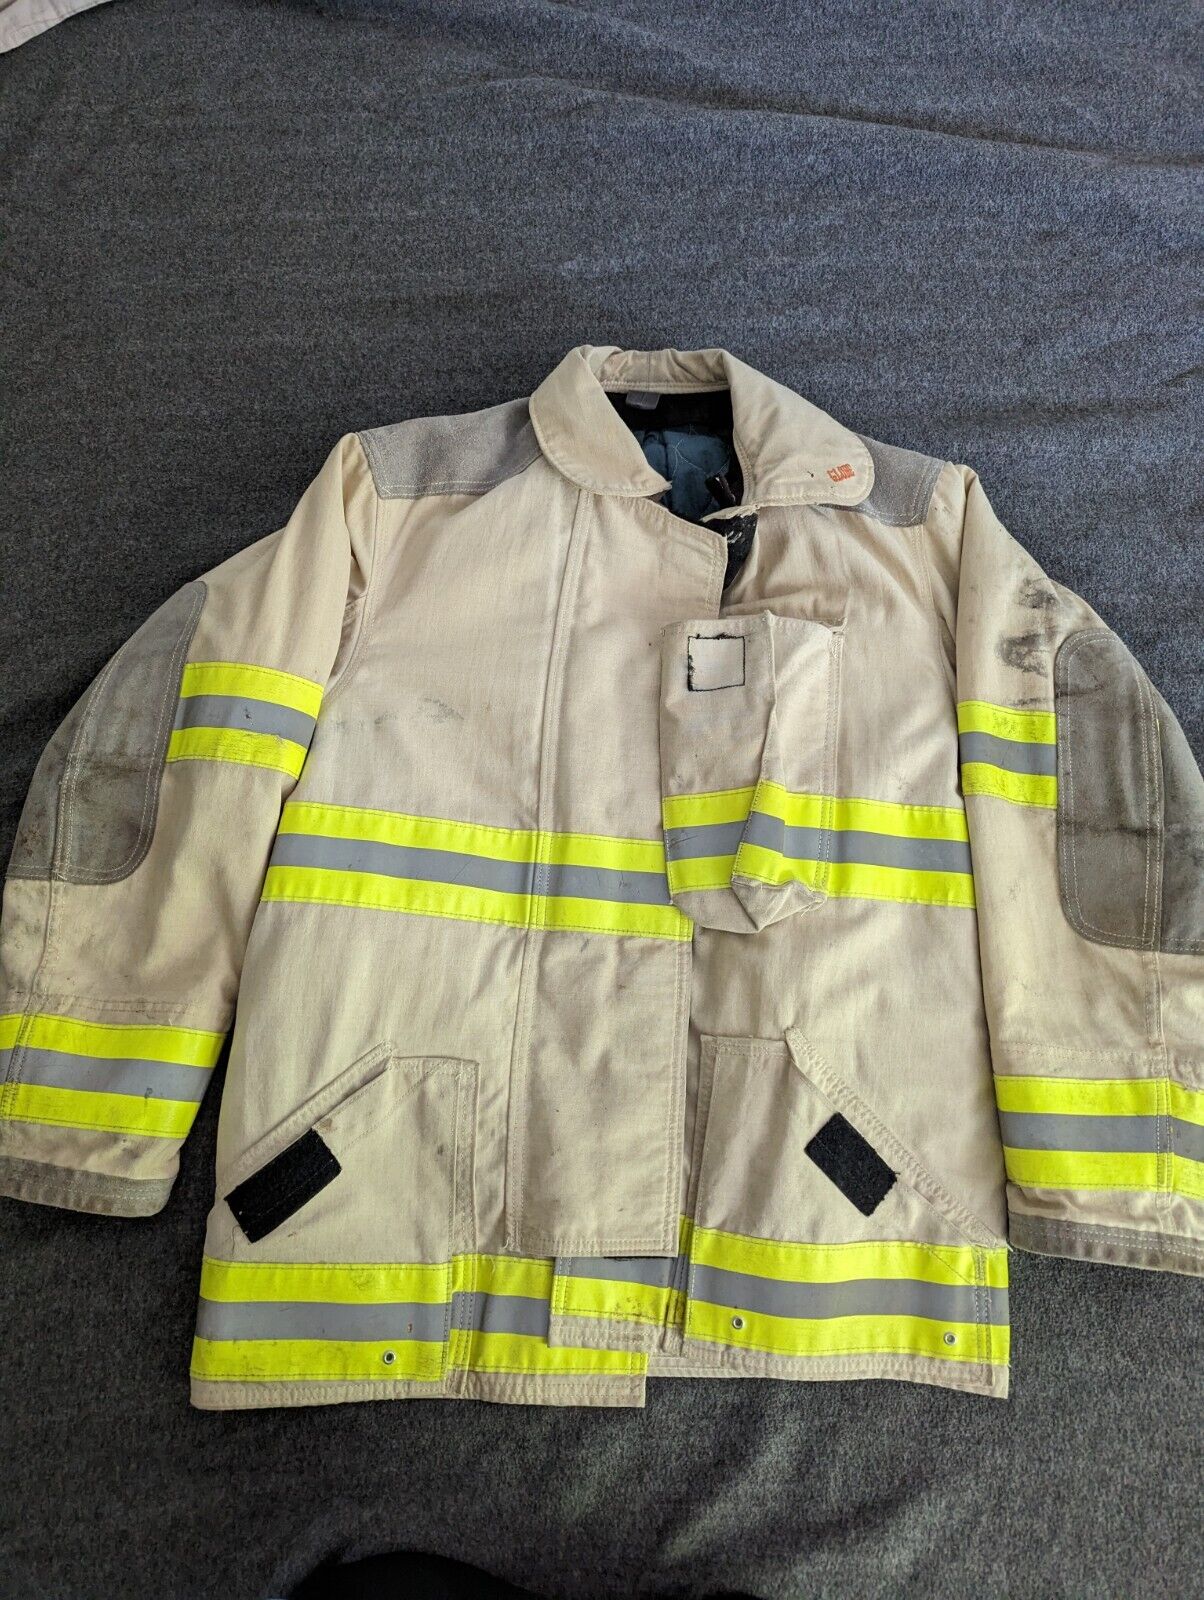 vintage globe fireman's coat size 42/Medium 